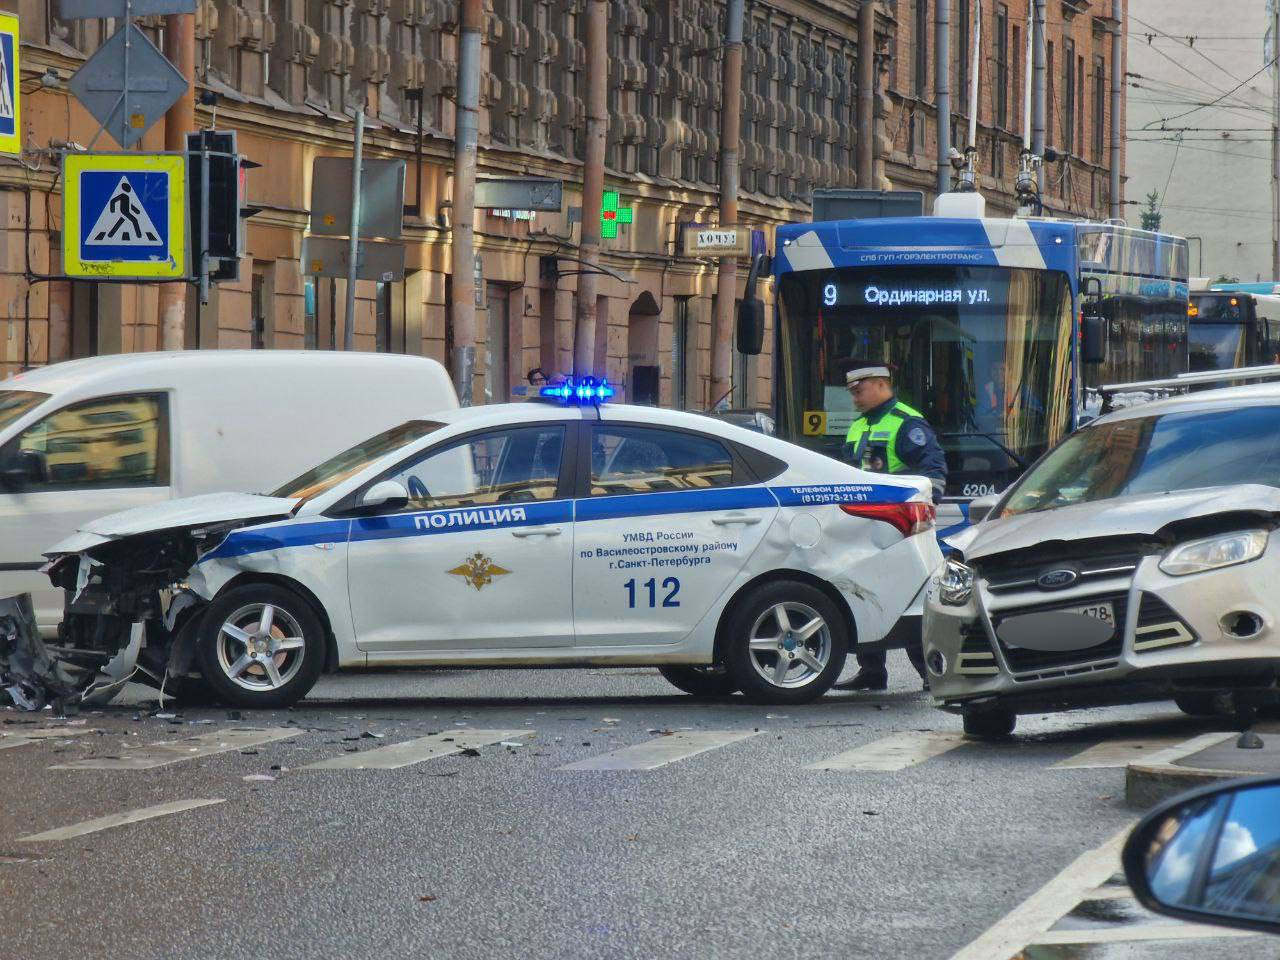 Полицейская машина. Машина "полиция". Полицейские машины Санкт-Петербурга. Разбитые полицейские машины. Полицейская машина врезалась